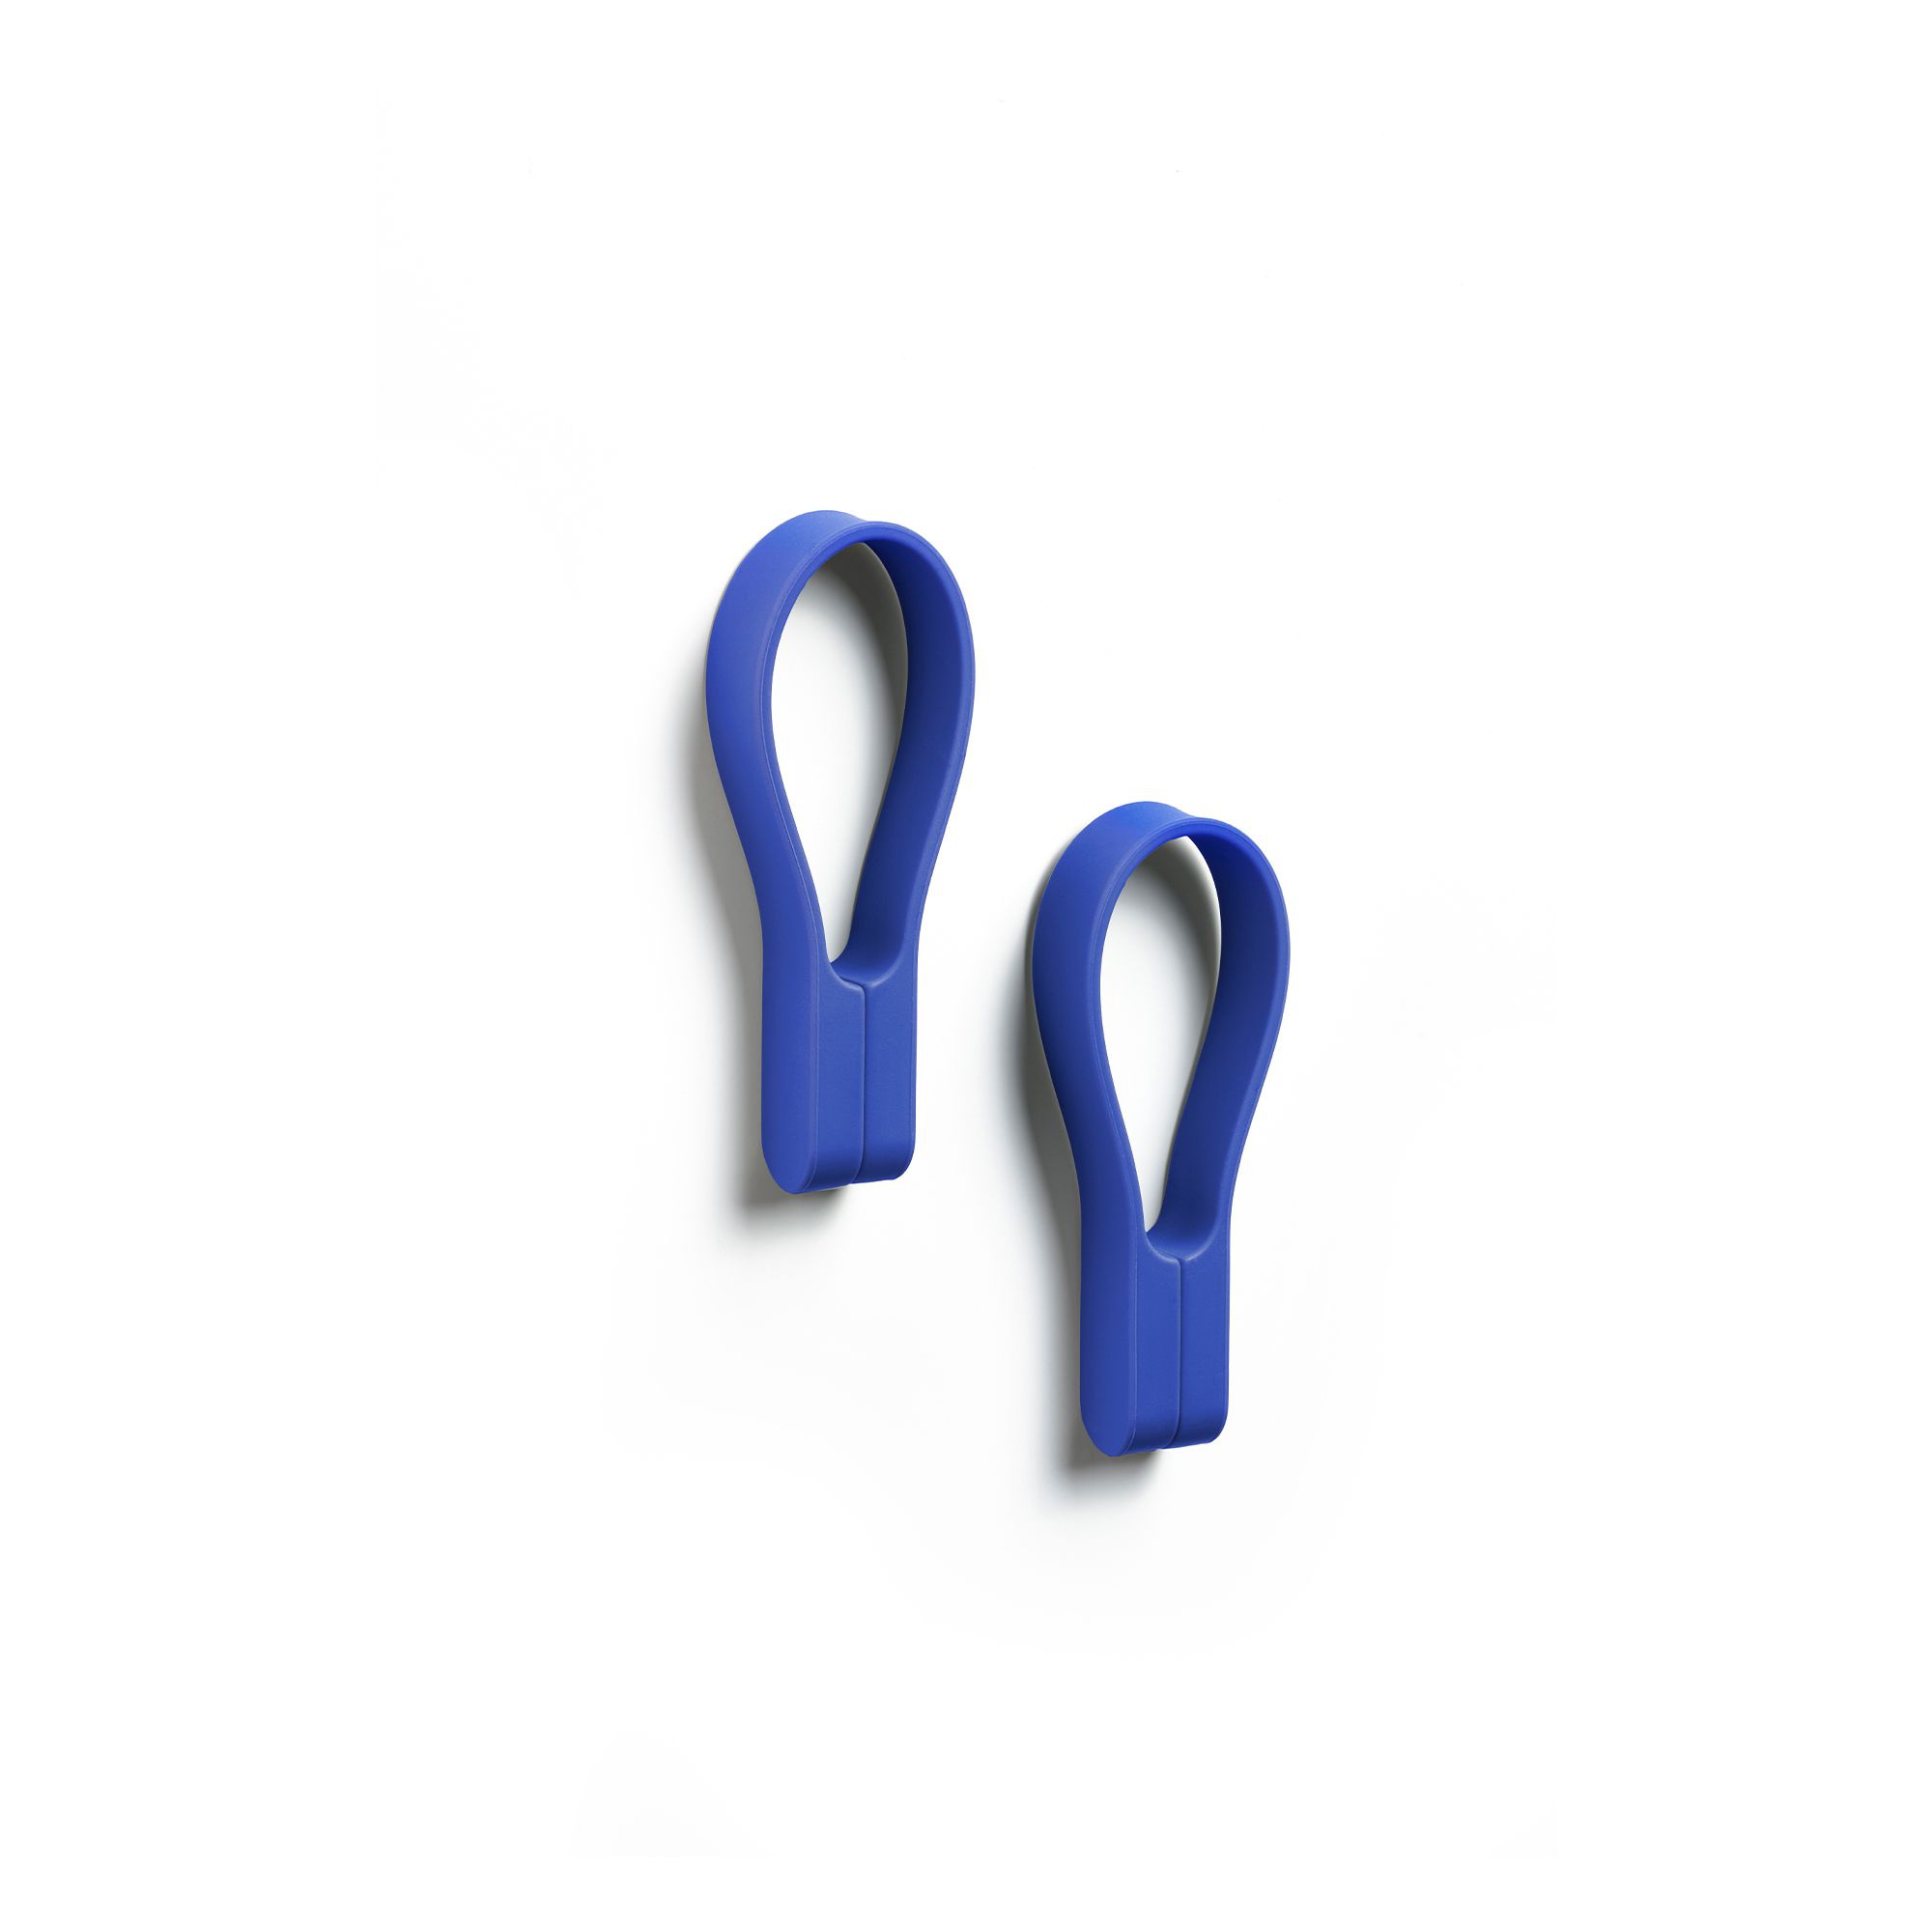 Zone - Loop magnet Handtuchhalter 2 Stk. - Indigo Blue